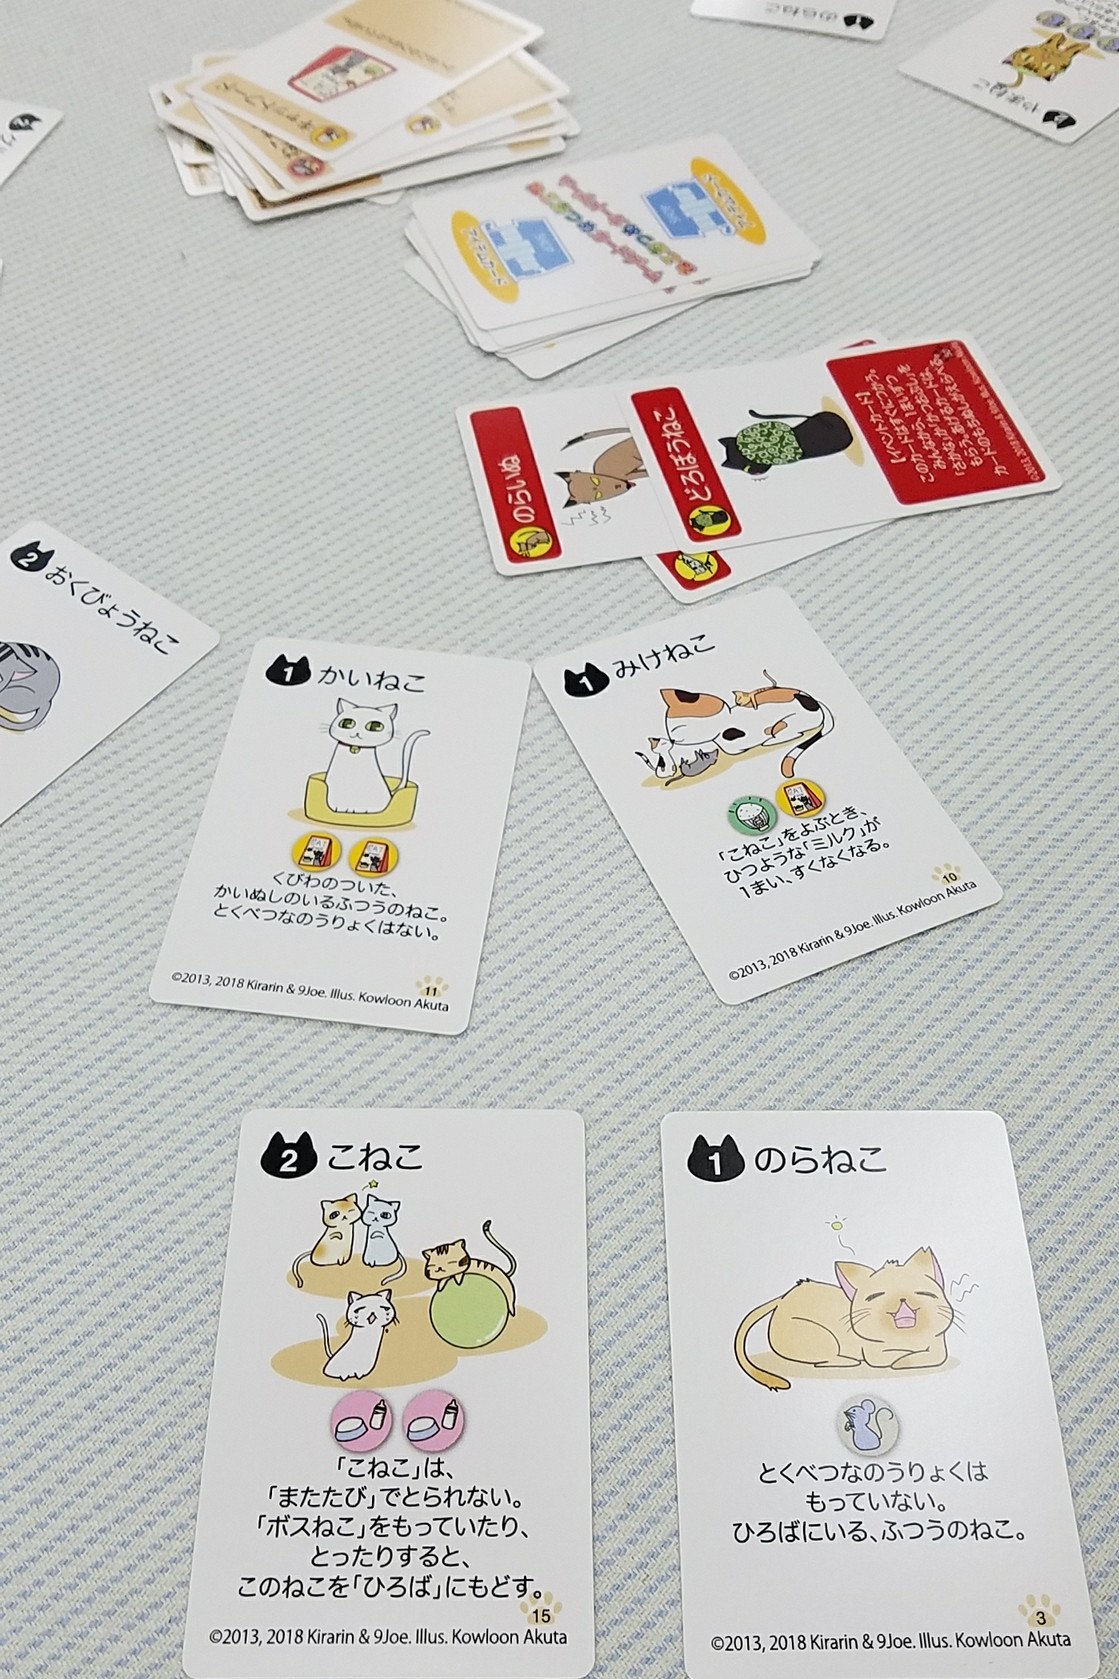 とうはち Tohachi 先日の 大阪 の新作 ねこあつめカードゲーム ひだまり編 テーマは Here Kitty Kitty に類似だけど こちらは猫ごとに呼び寄せる方法が異なる カードを見ても分かるように 小学生とでも気軽に楽しめそう ところで